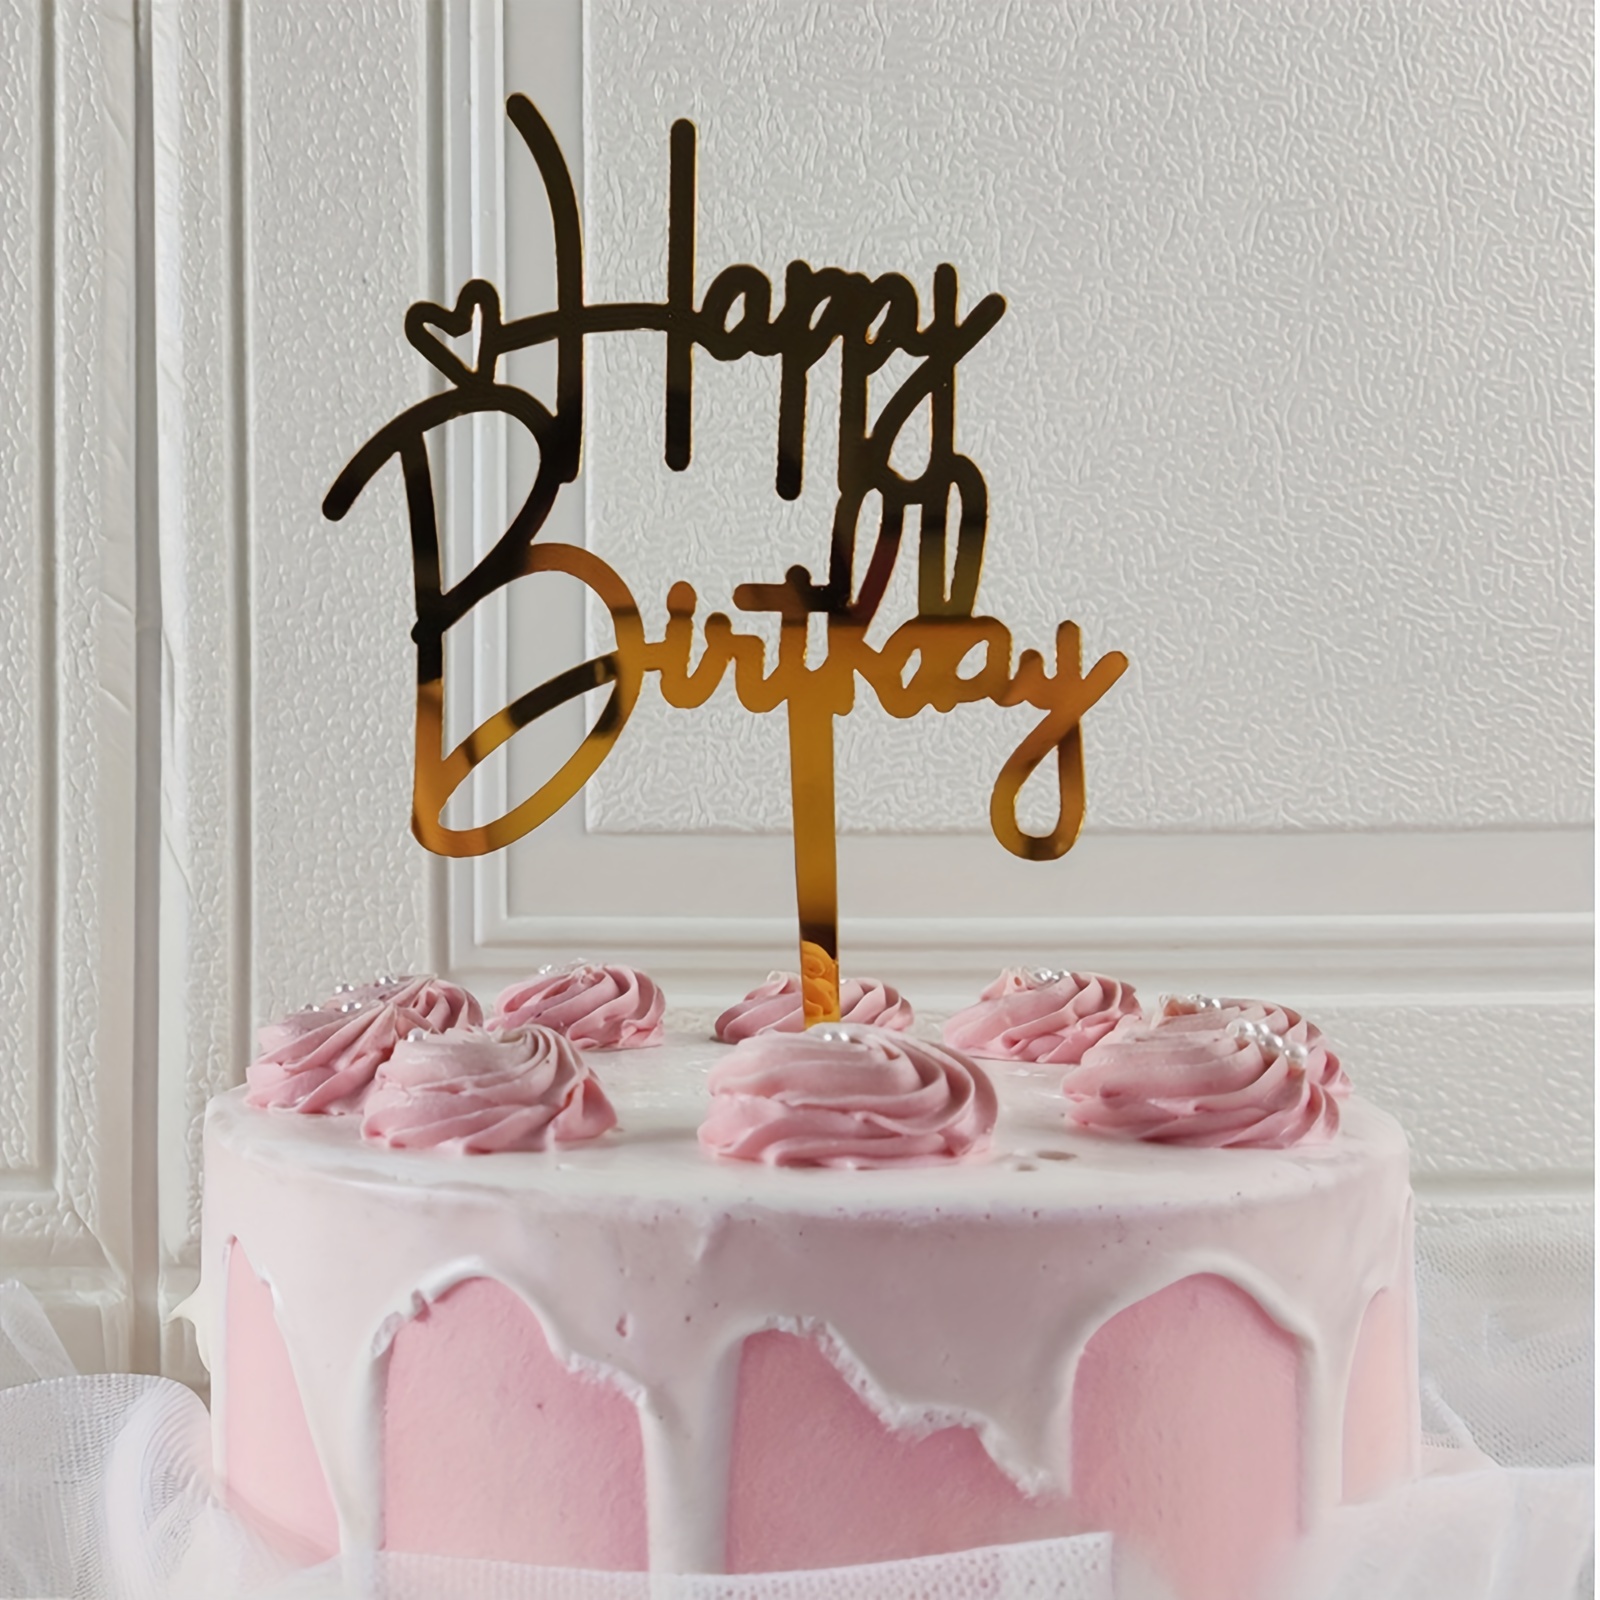 Topper pour gâteau Happy Birthday - Doré